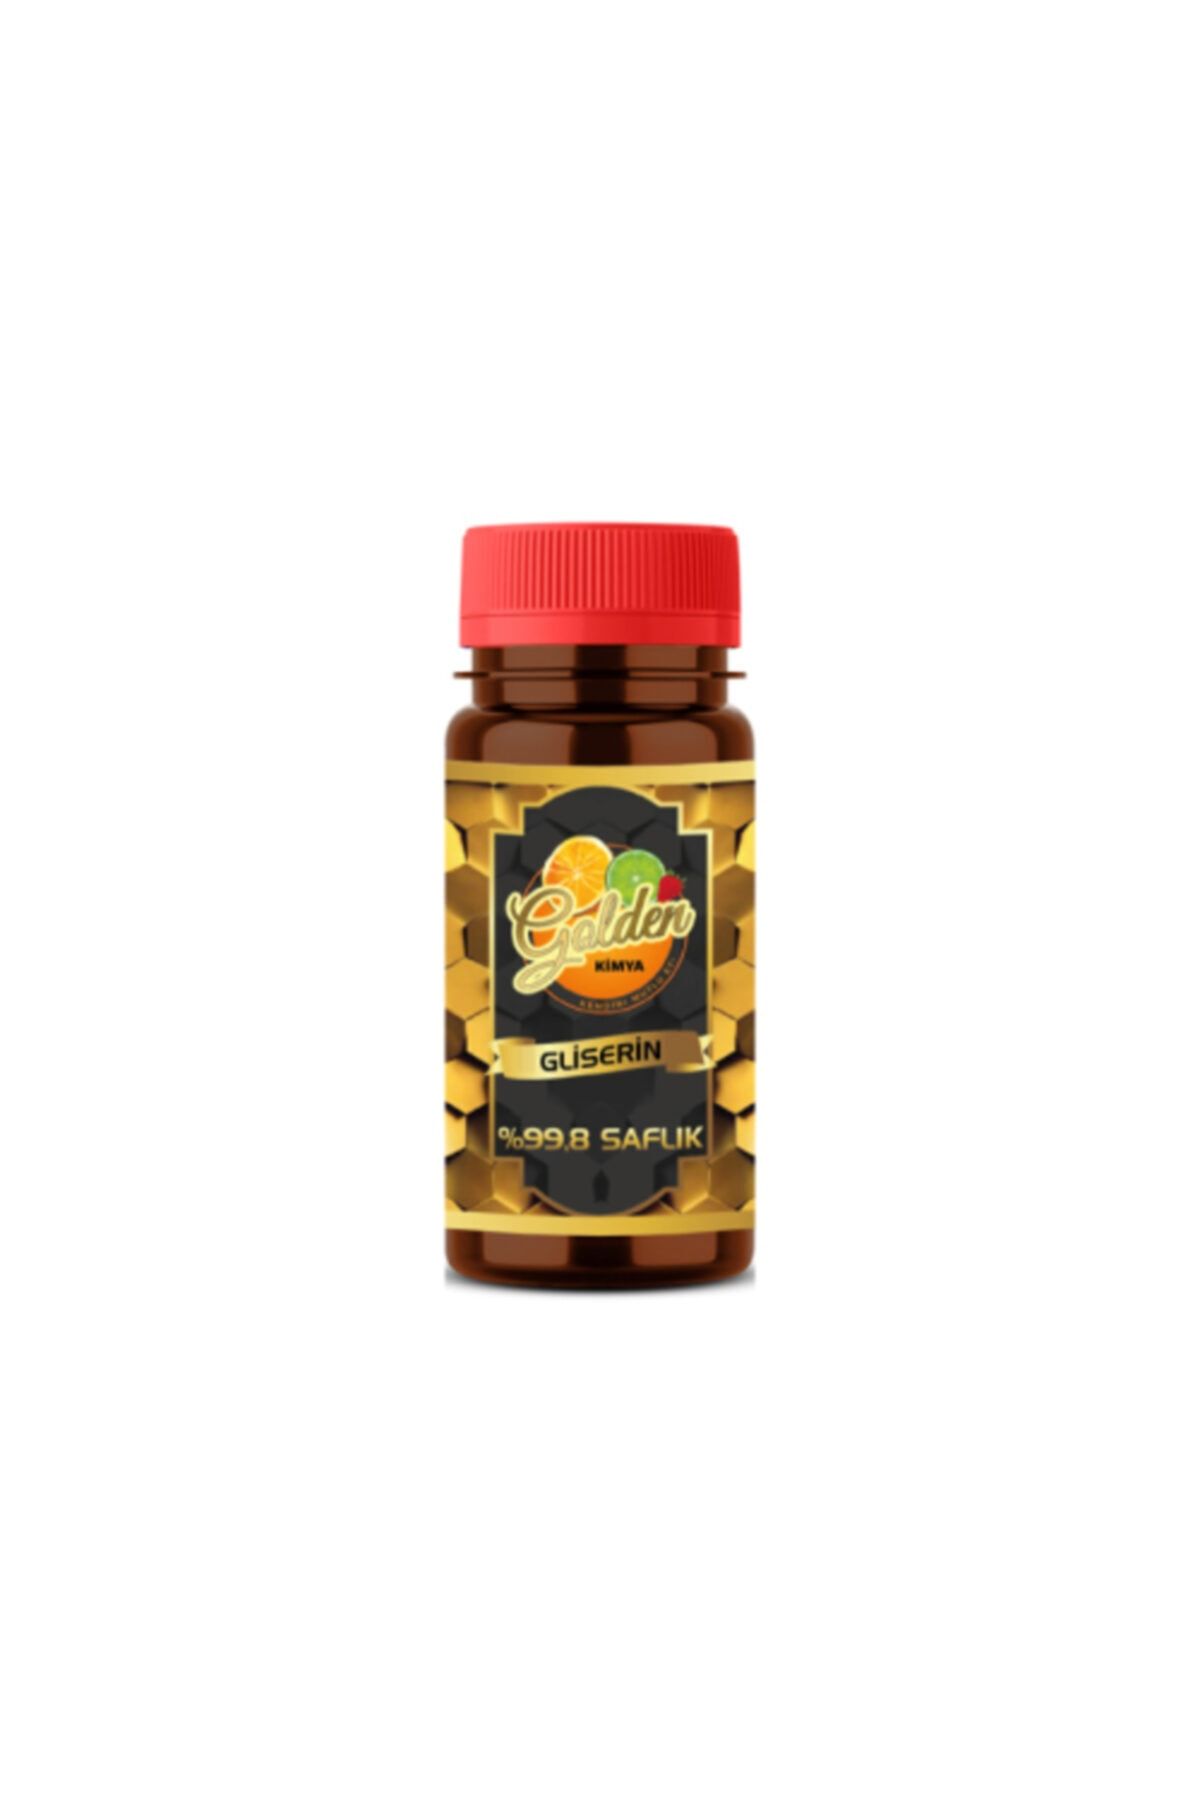 Golden Kimya 100 ml - %99.8 Saflığında Wilmar Bitkisel Gliserin - Ithal Ürün